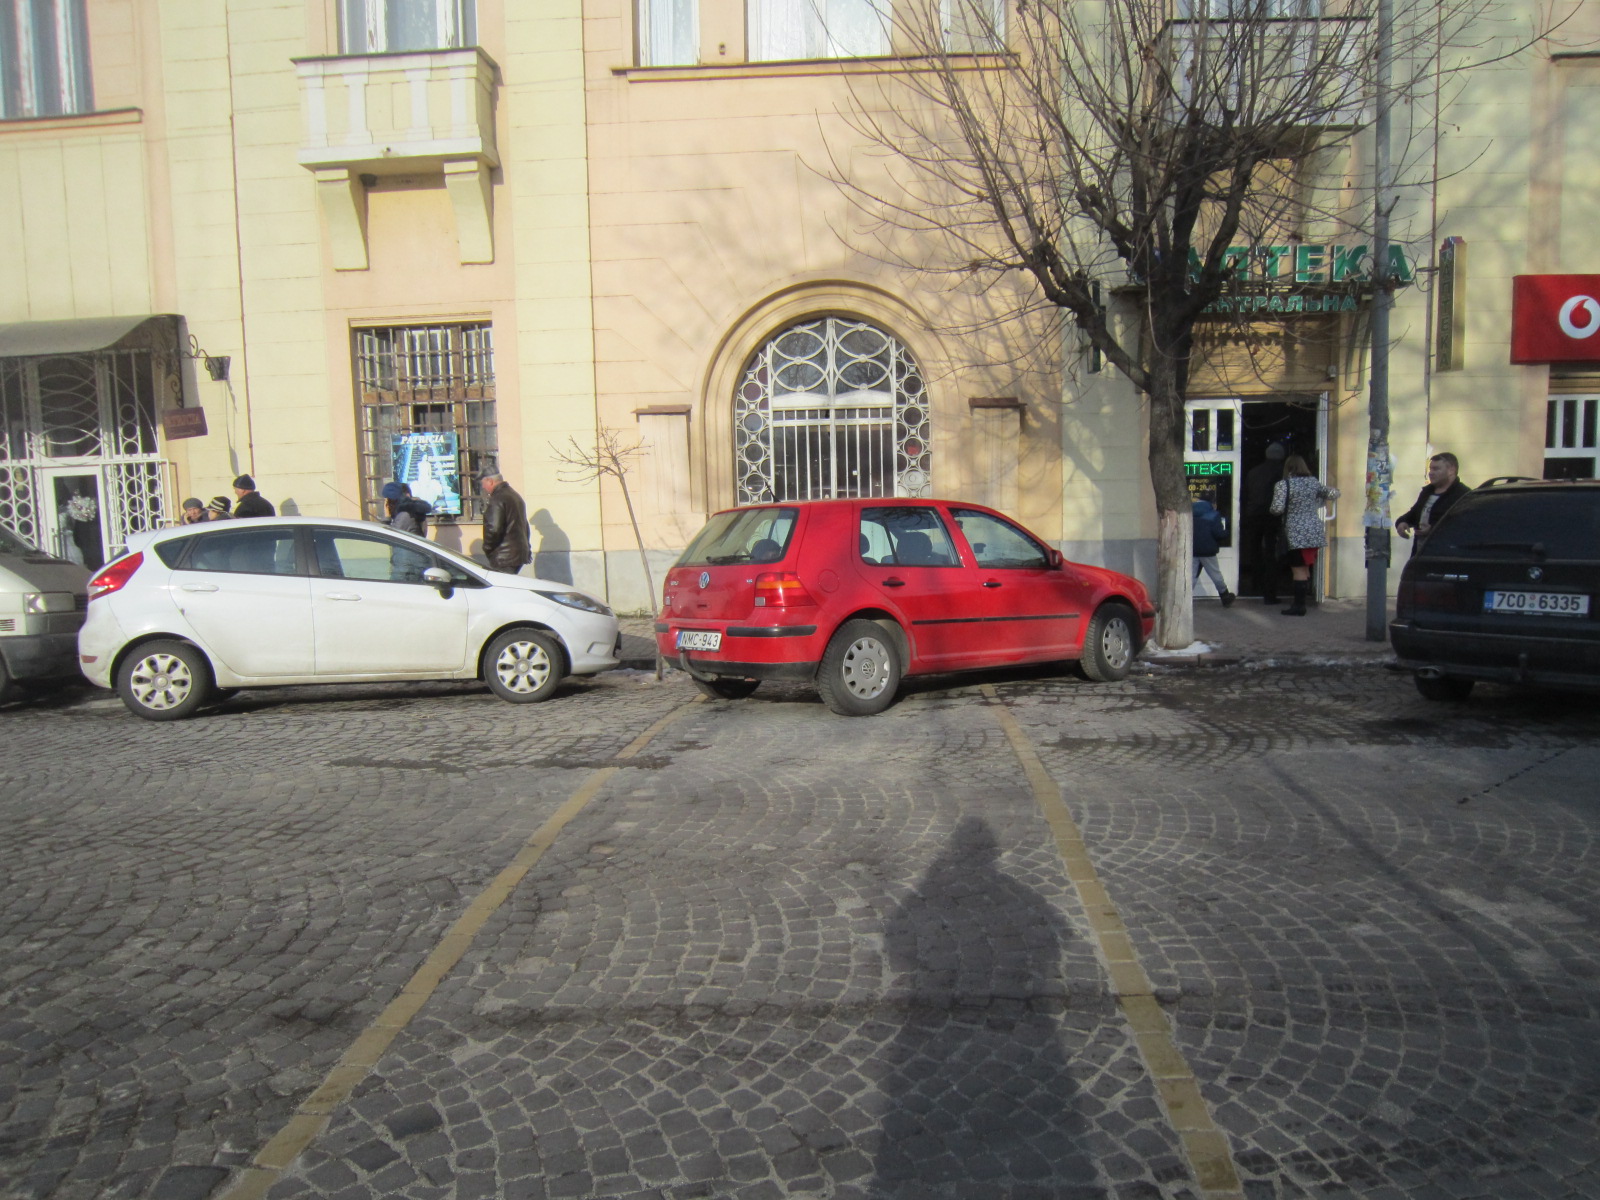 Фото неудачной парковки прислали читатели Голоса Карпат.